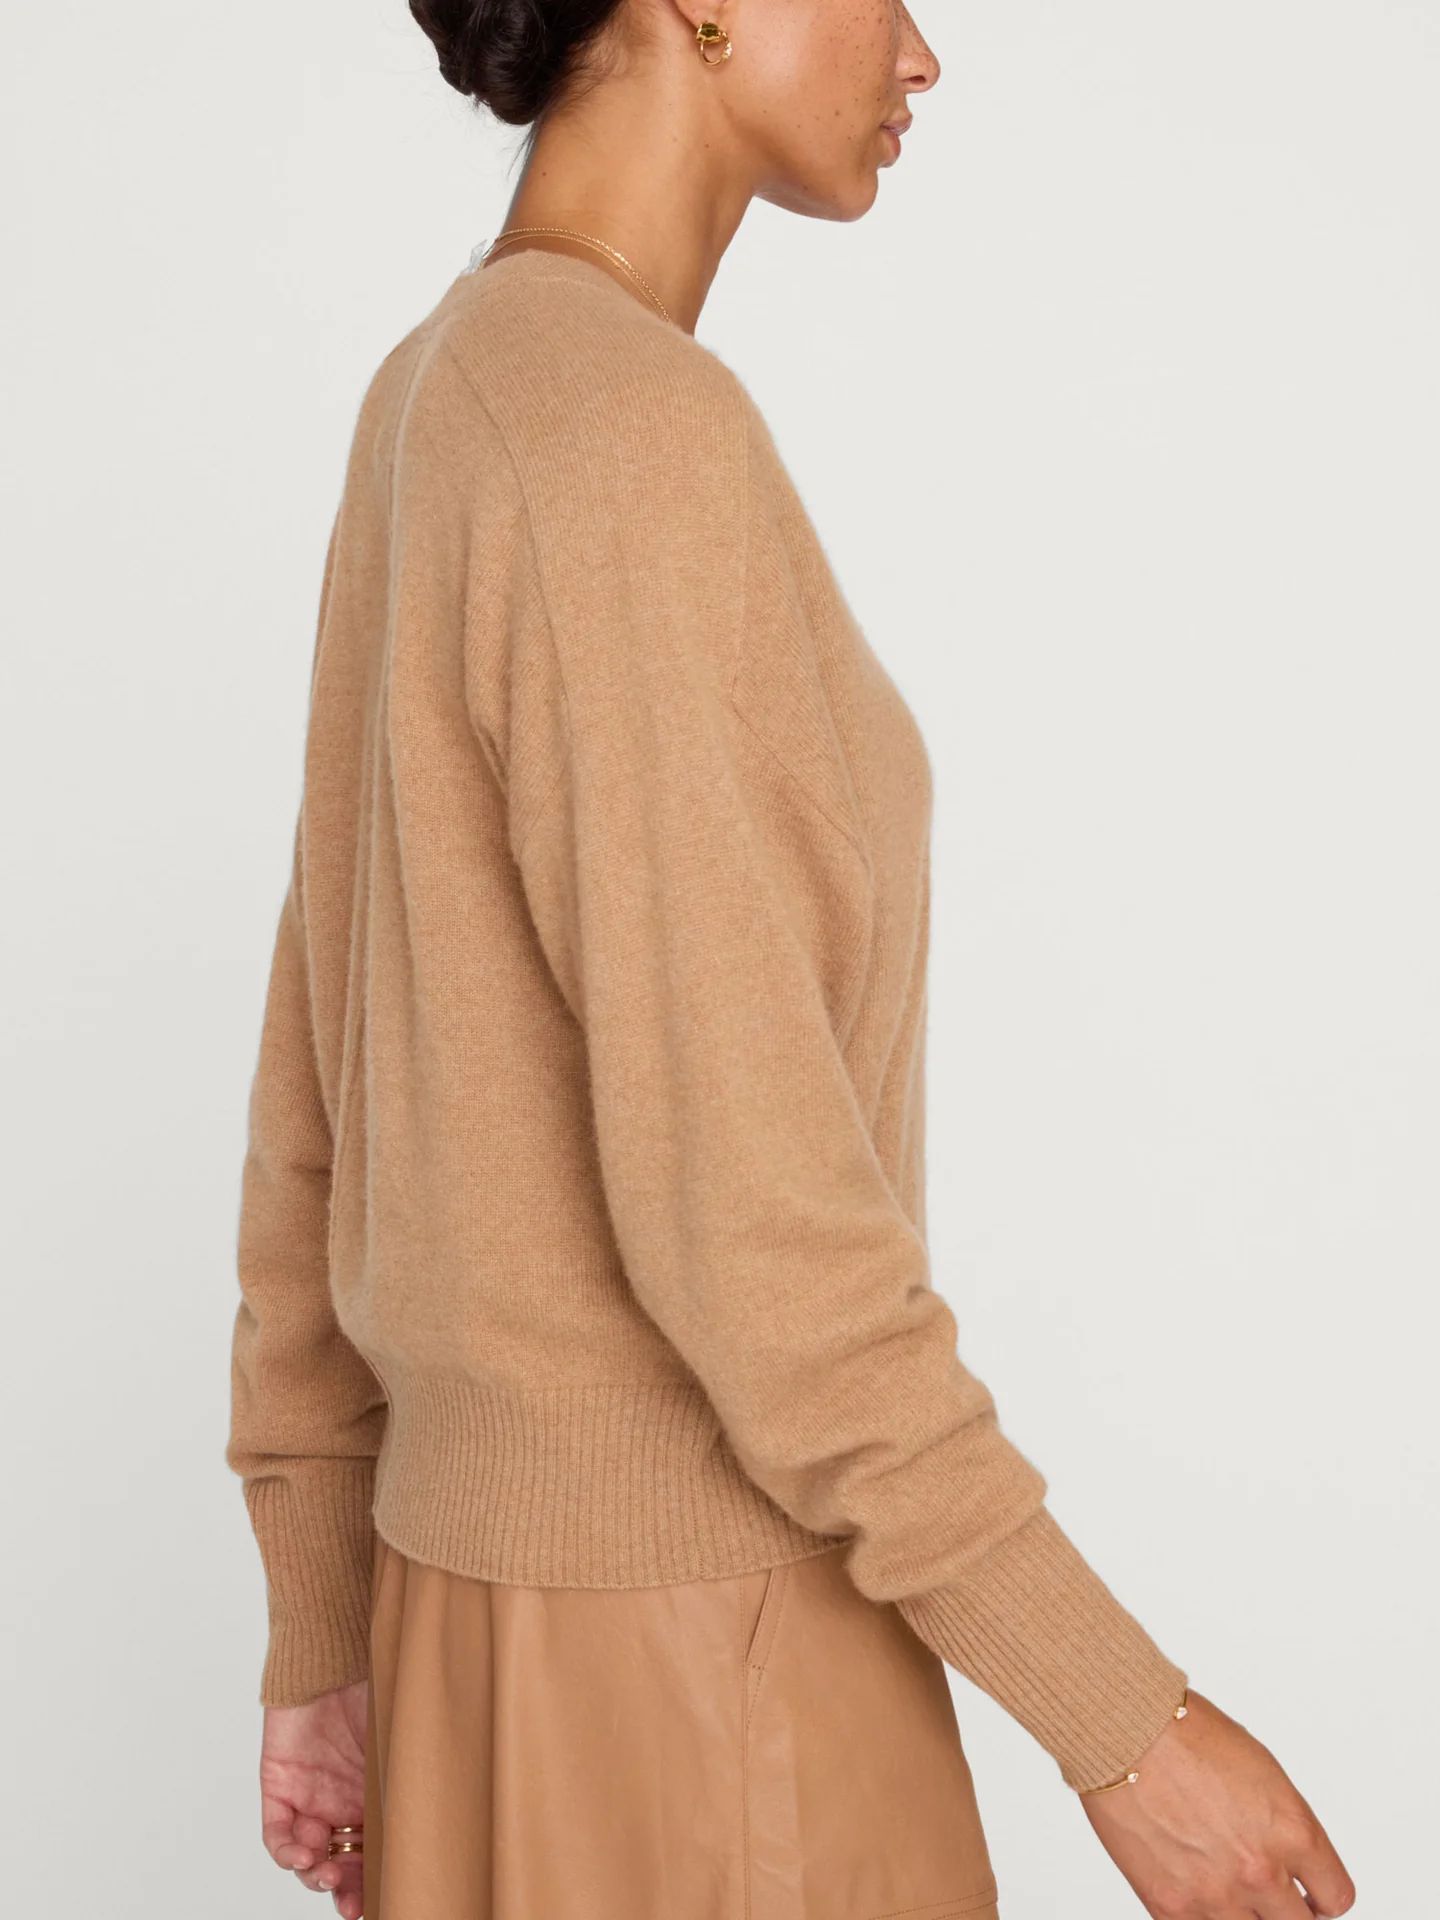 Brochu Walker | Women's Leia Vee Sweater in Camel Mélange | Brochu Walker